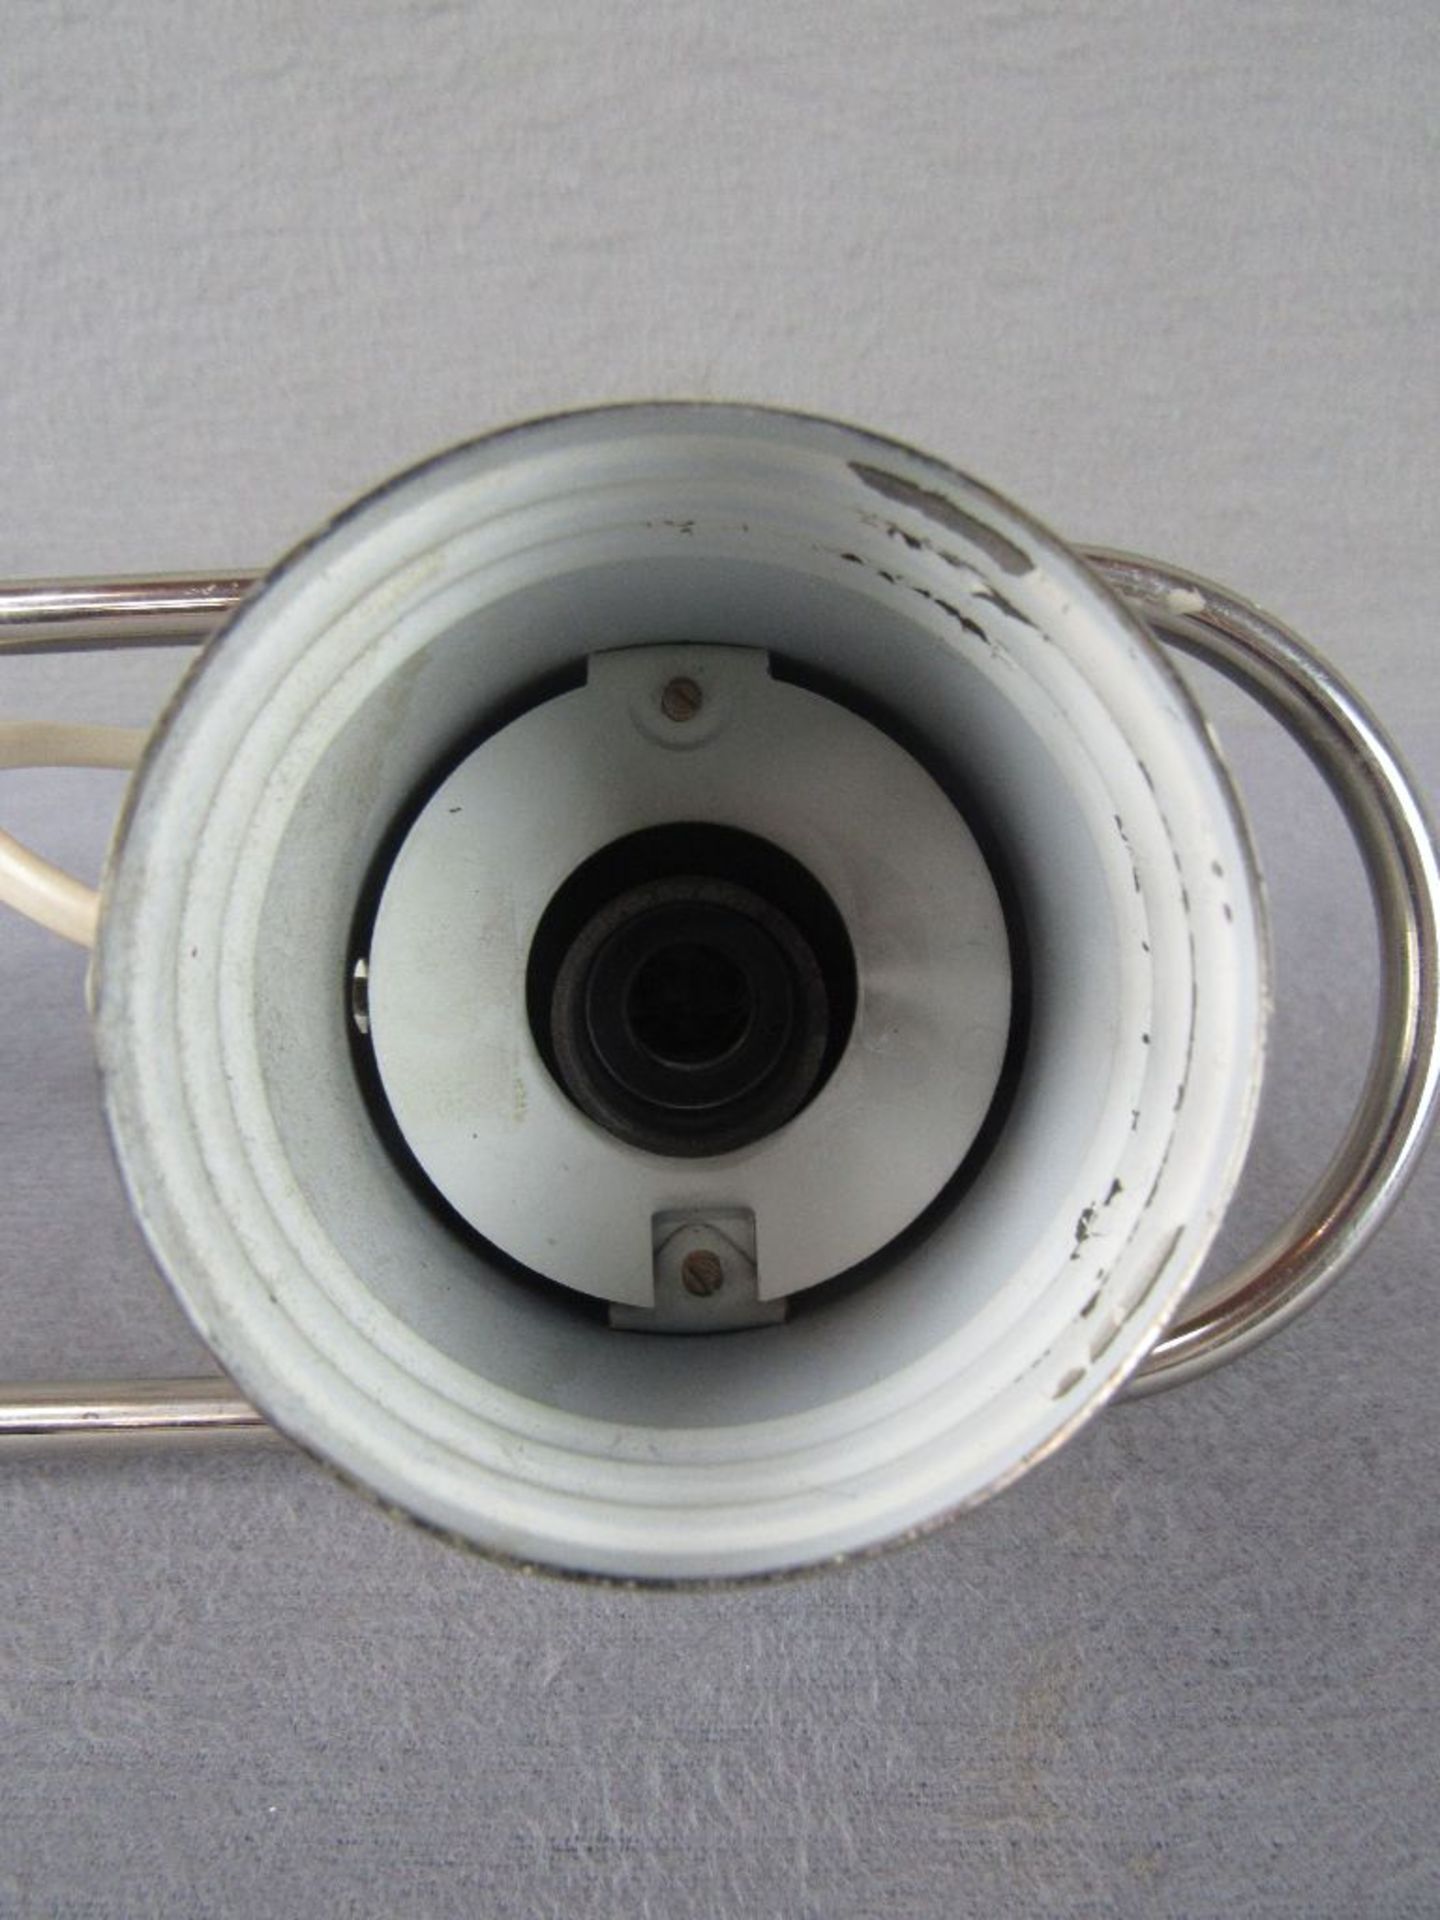 Bauhaus Schreibtischlampe verchromtes Metall schwenkbar 29cm hoch - Image 5 of 5